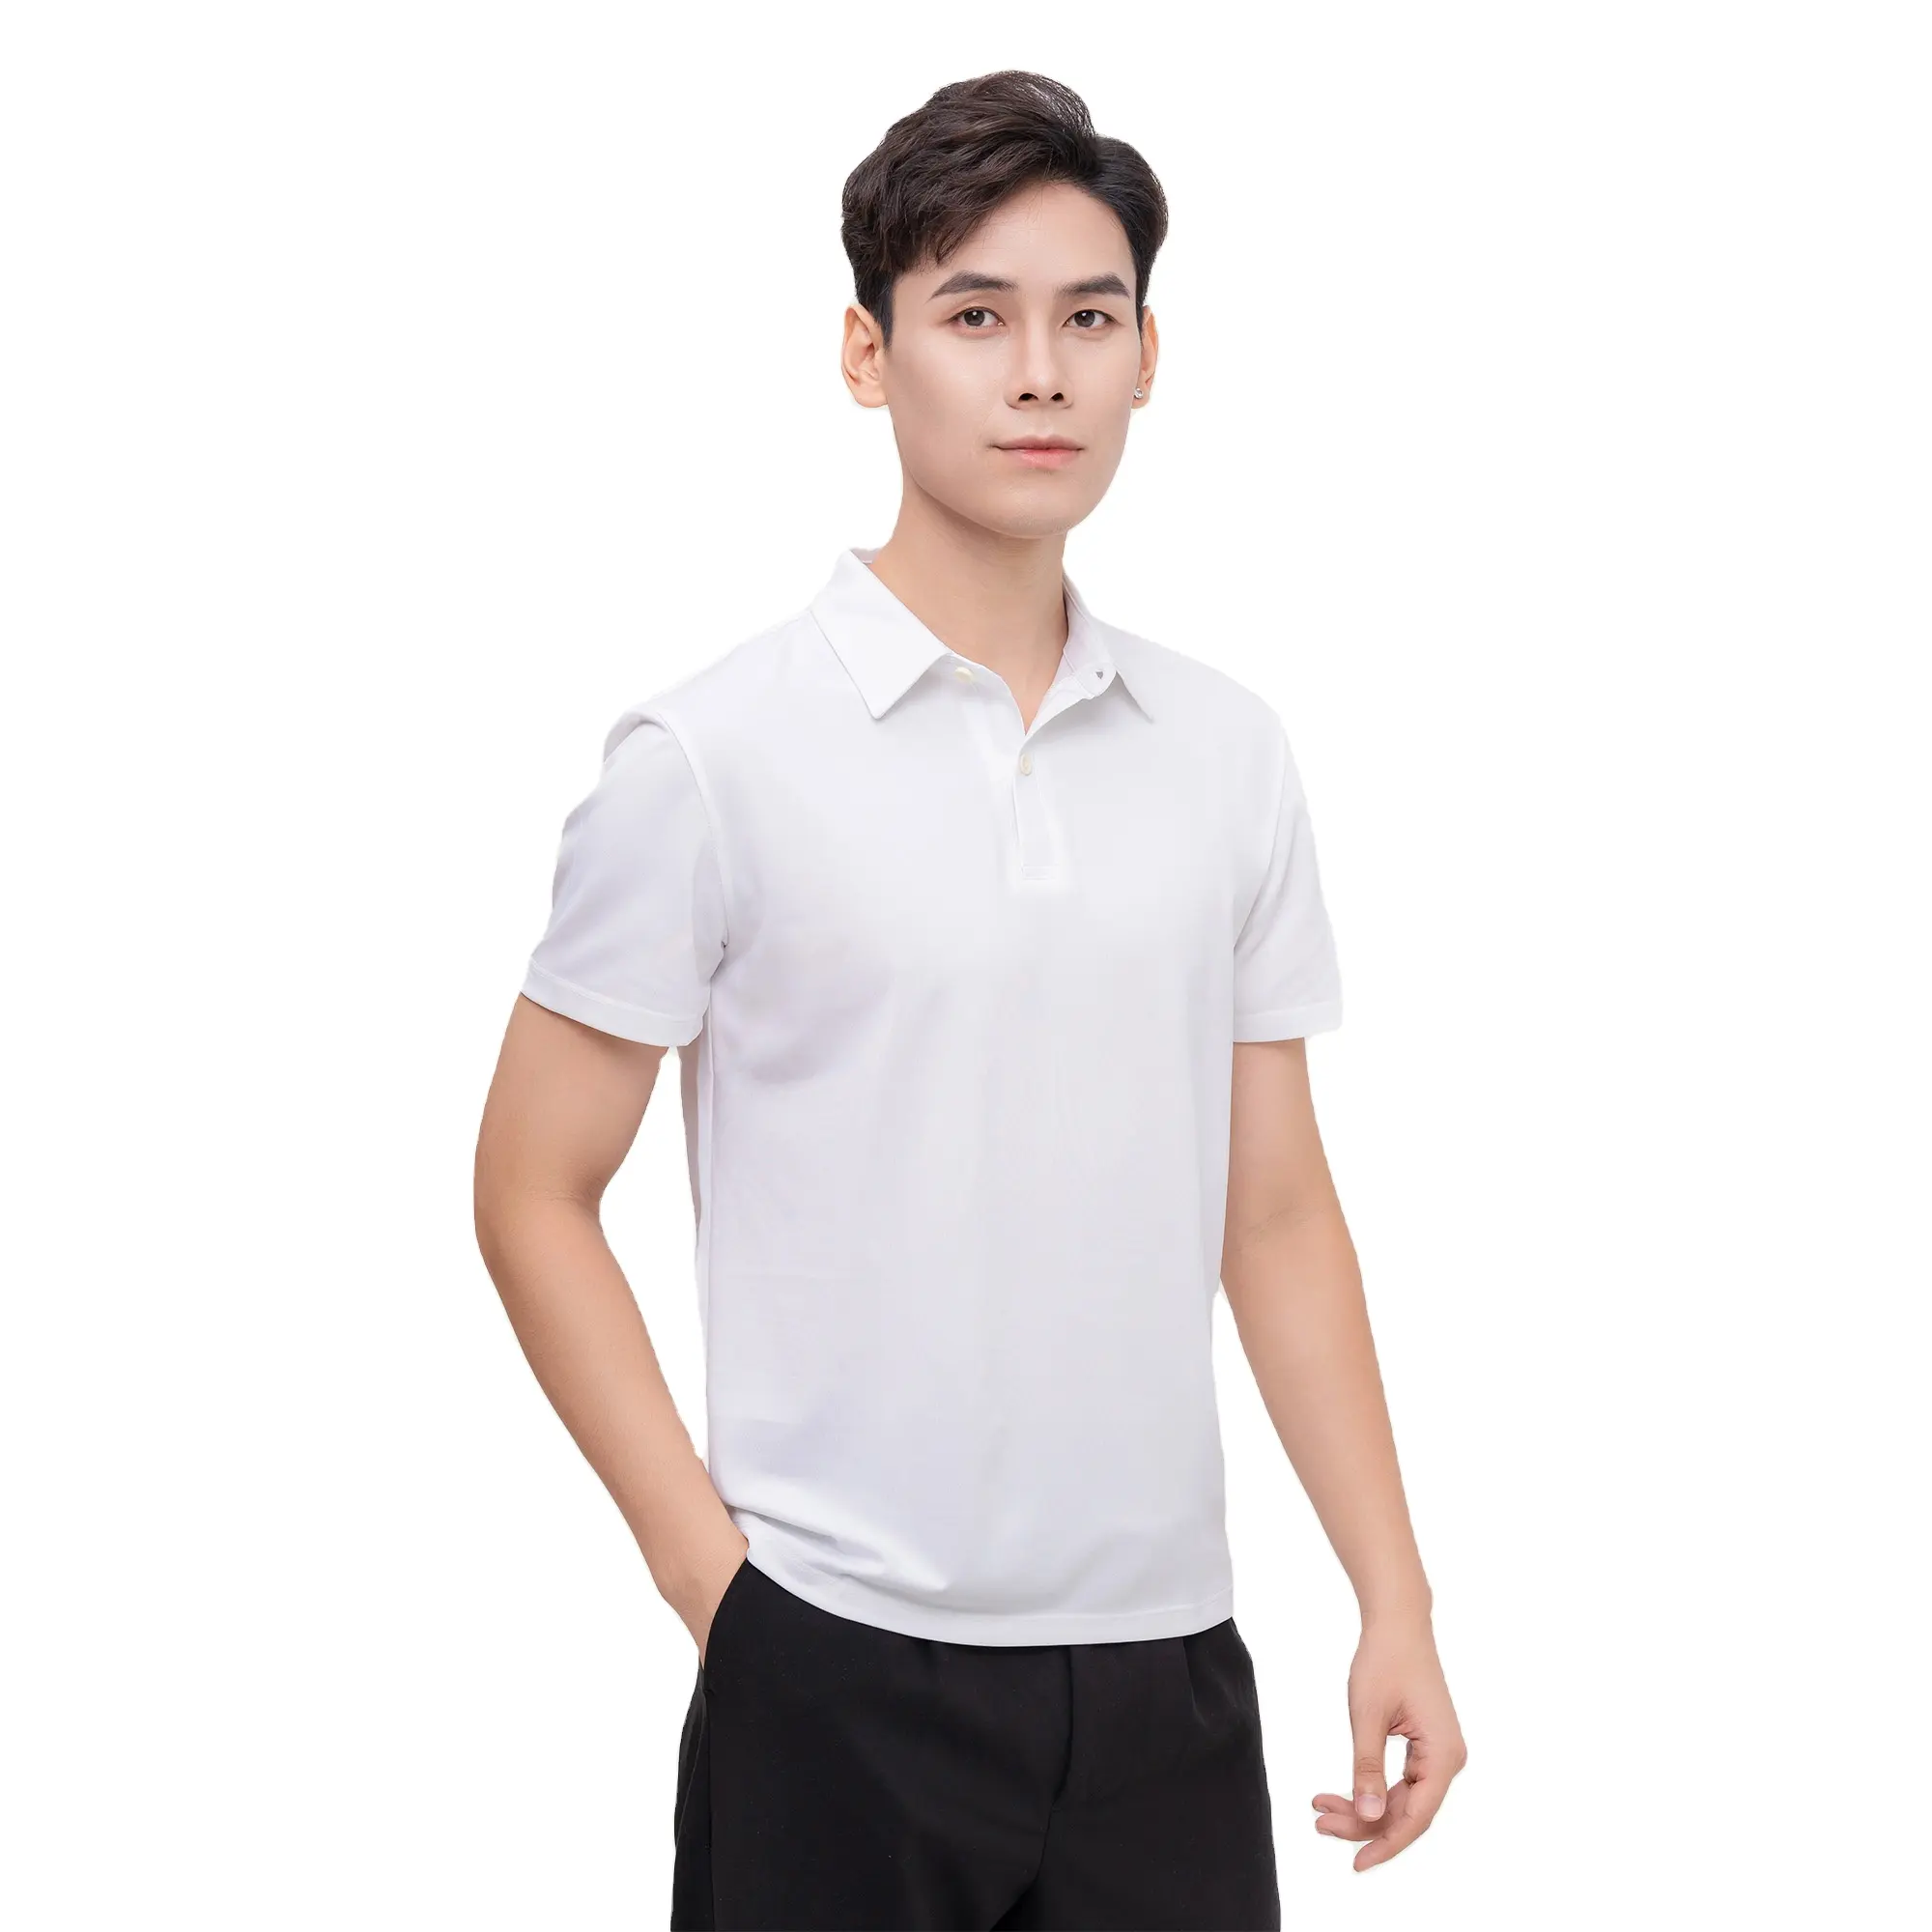 Оптовая продажа, мужская формальная футболка и кардиган, 100% хлопок, полиэстер, дышащий новый дизайн OEM с длинными короткими рукавами